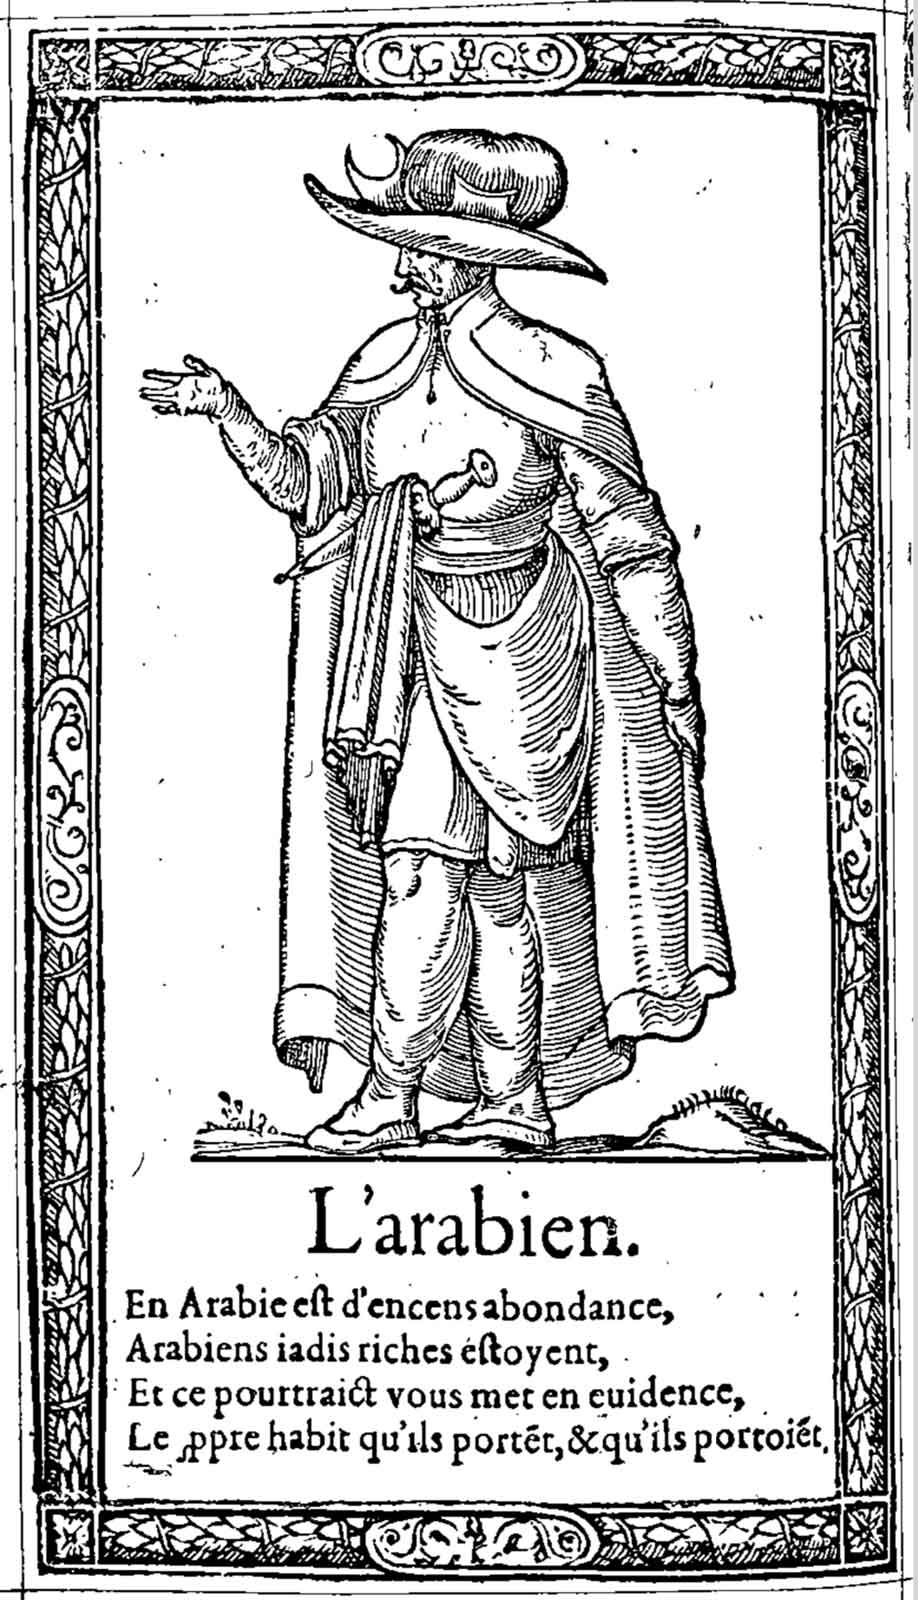 L’arabien. Desprez, Recueil de la diversité des habits (1564)